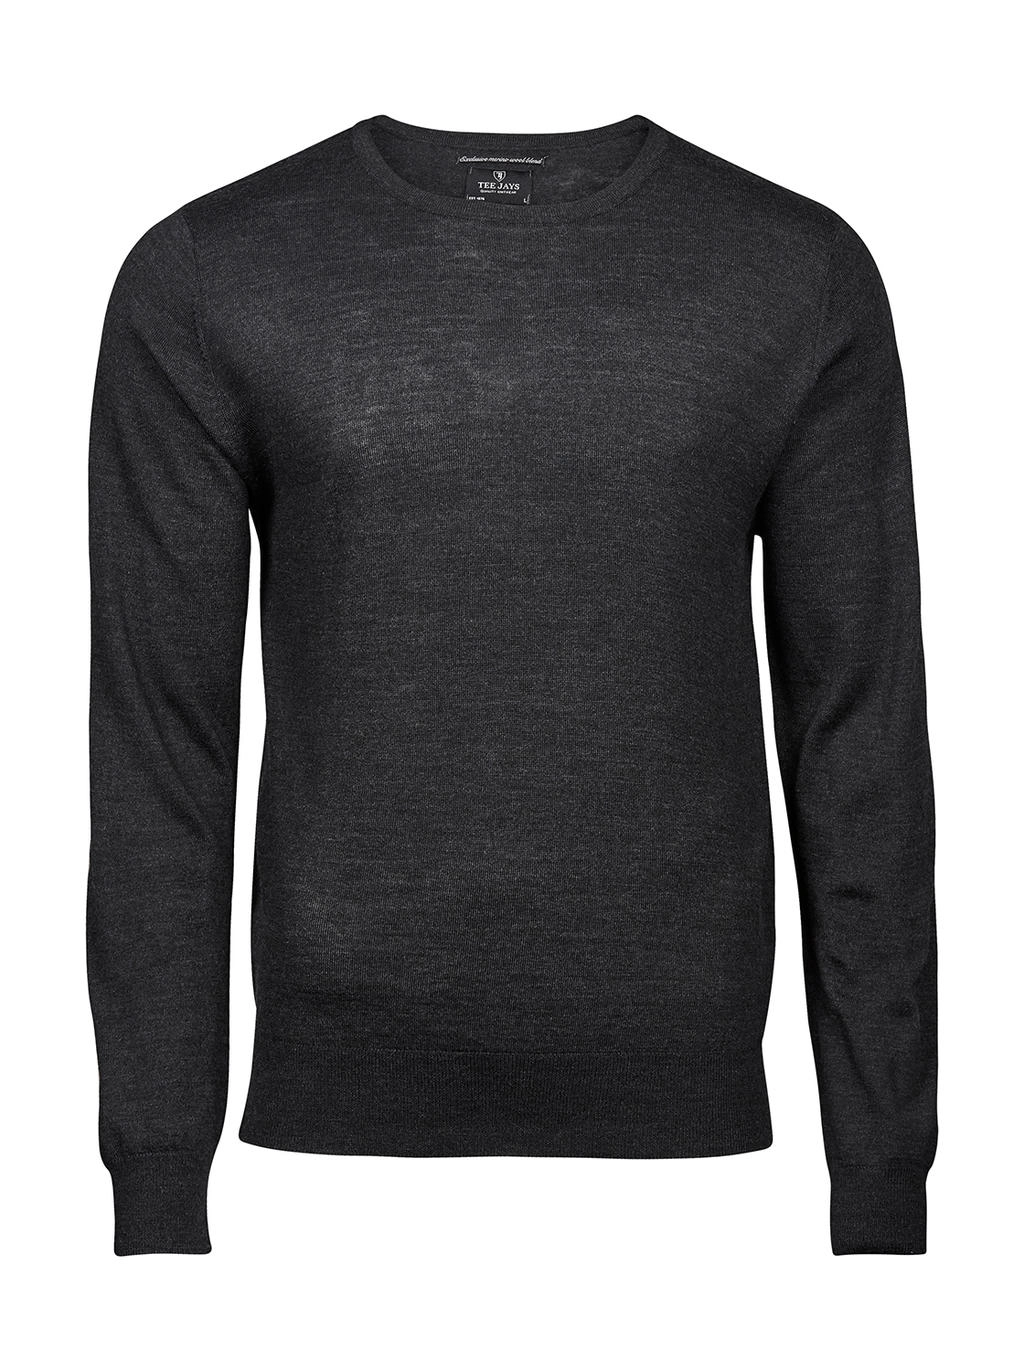 Men`s Crew Neck Sweater zum Besticken und Bedrucken in der Farbe Dark Grey mit Ihren Logo, Schriftzug oder Motiv.